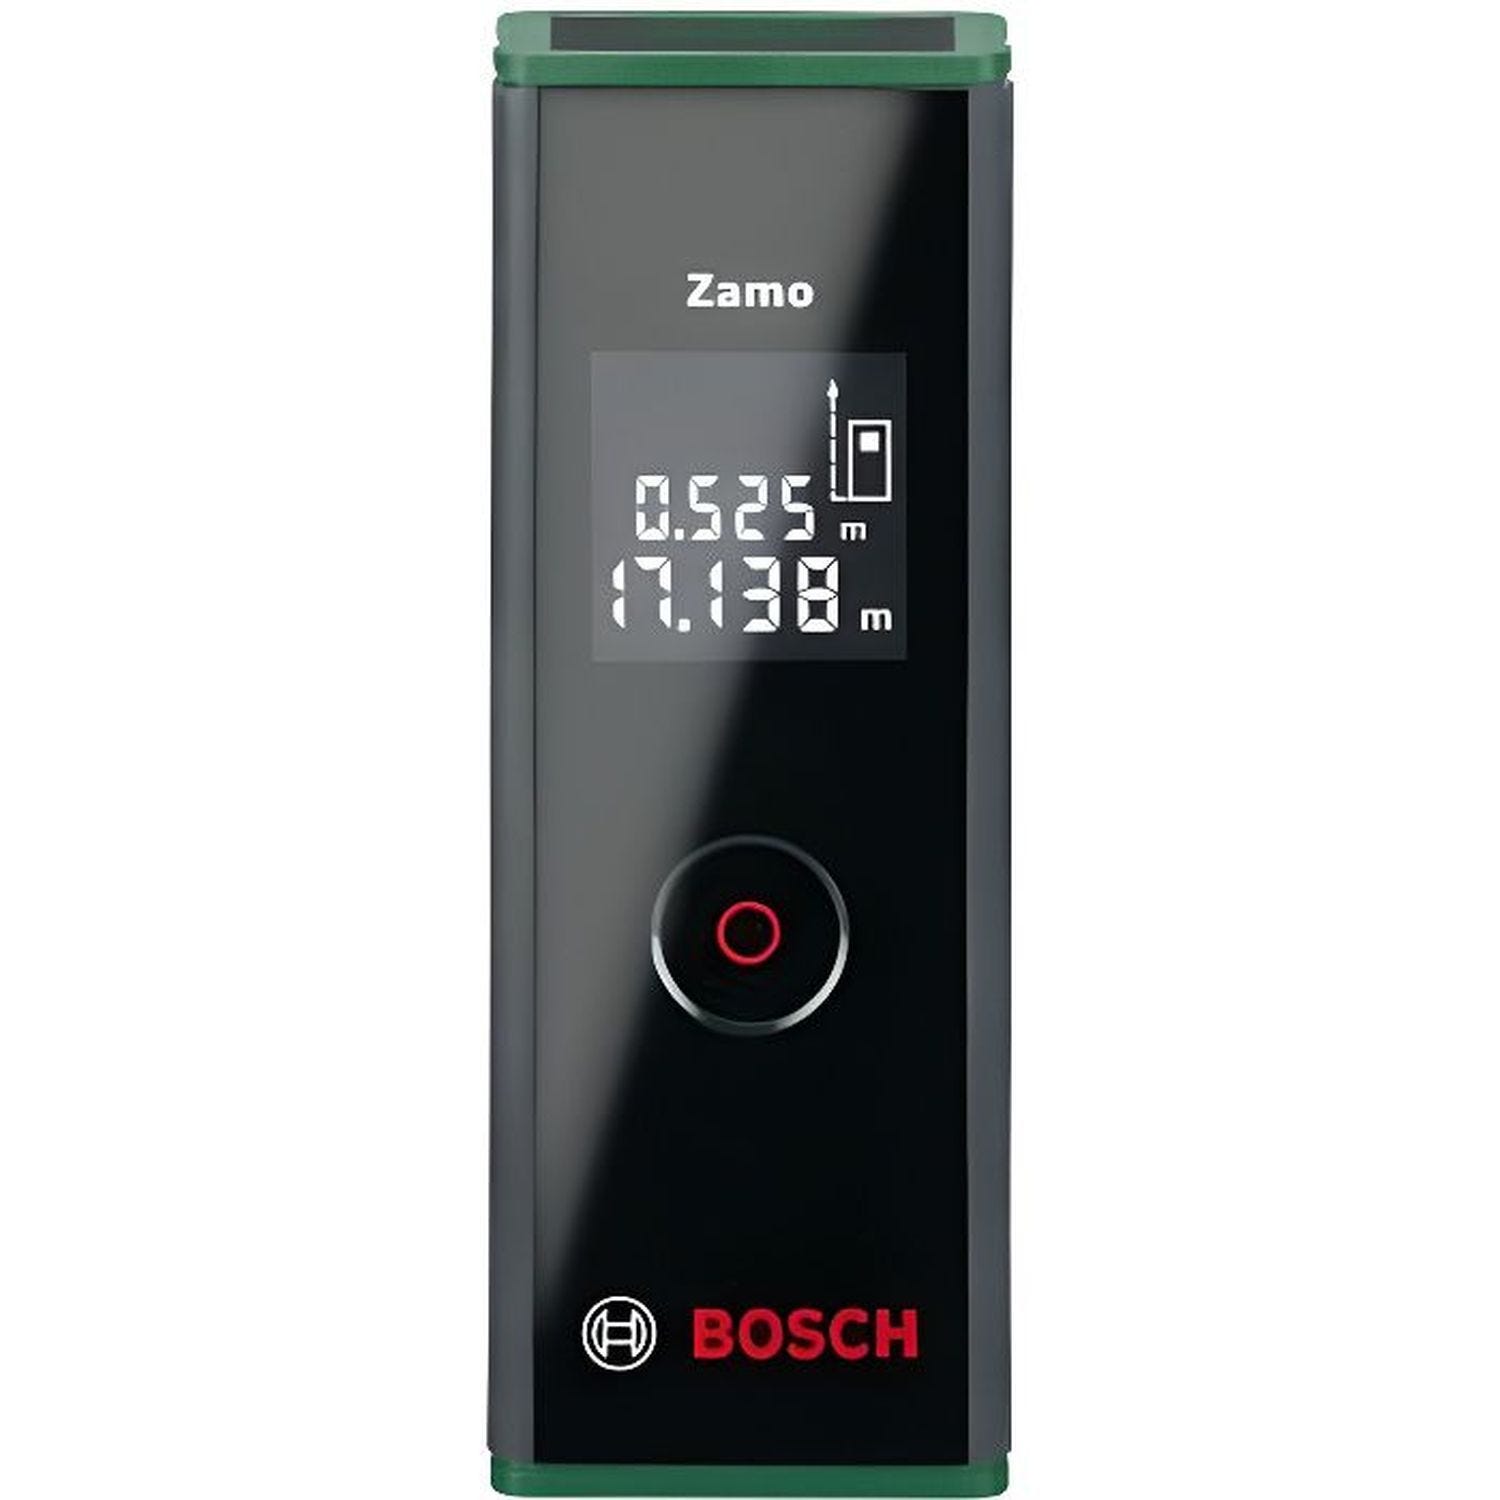 Télémètre laser Bosch Zamo 25m